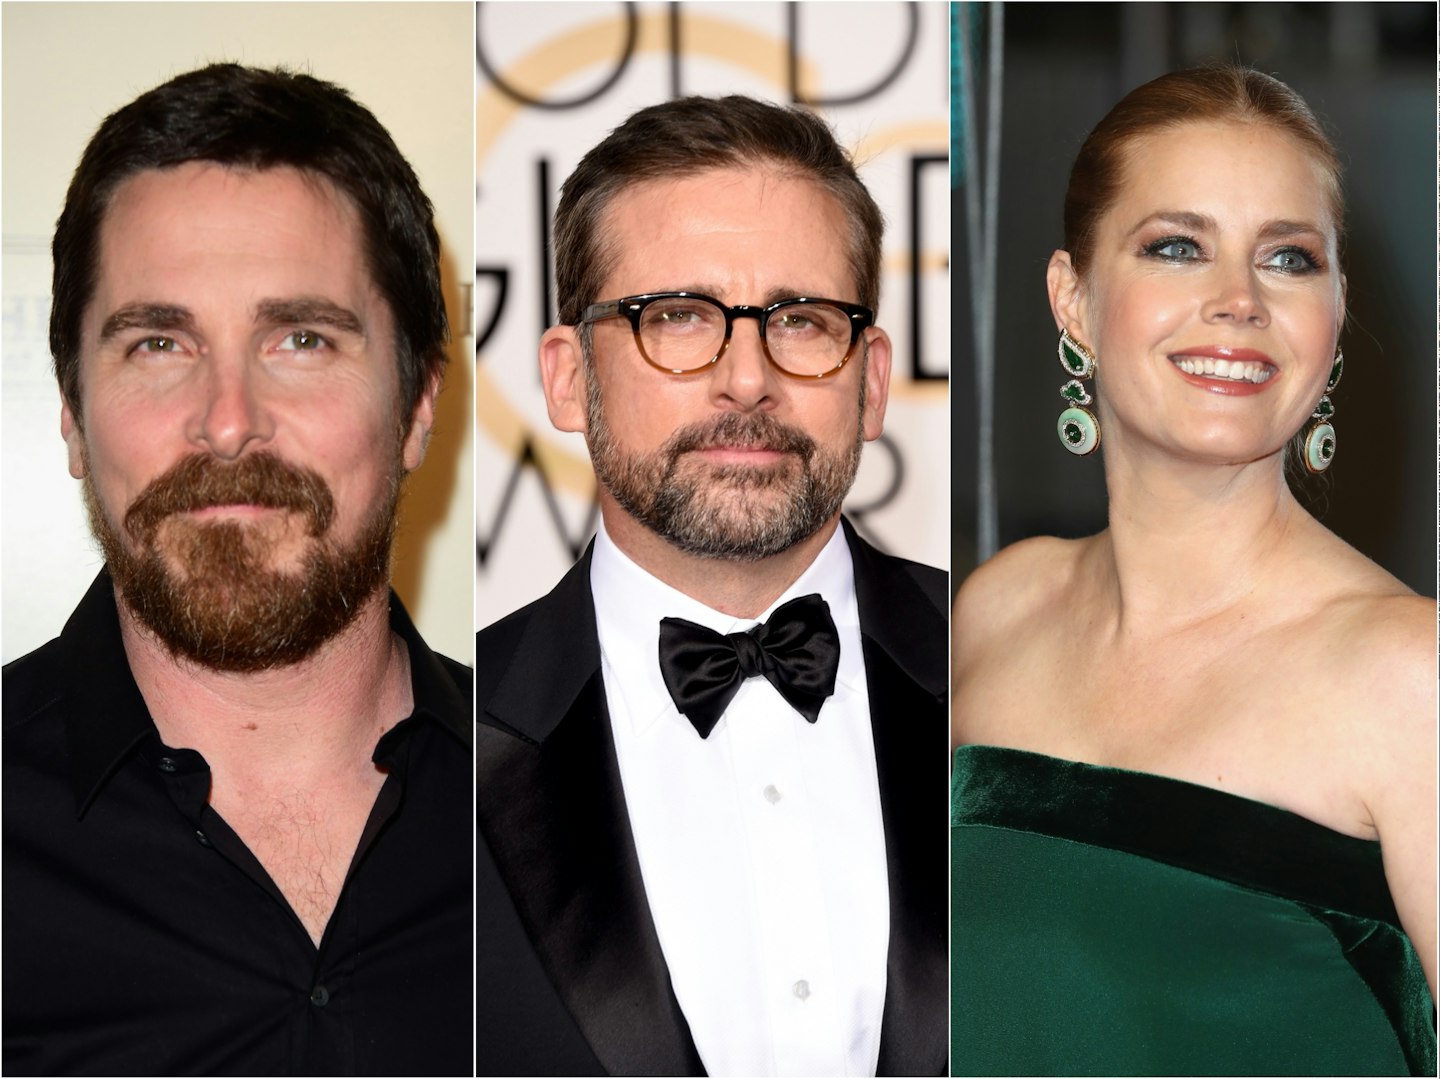 Christian Bale, Steve Carell and Amy Adams